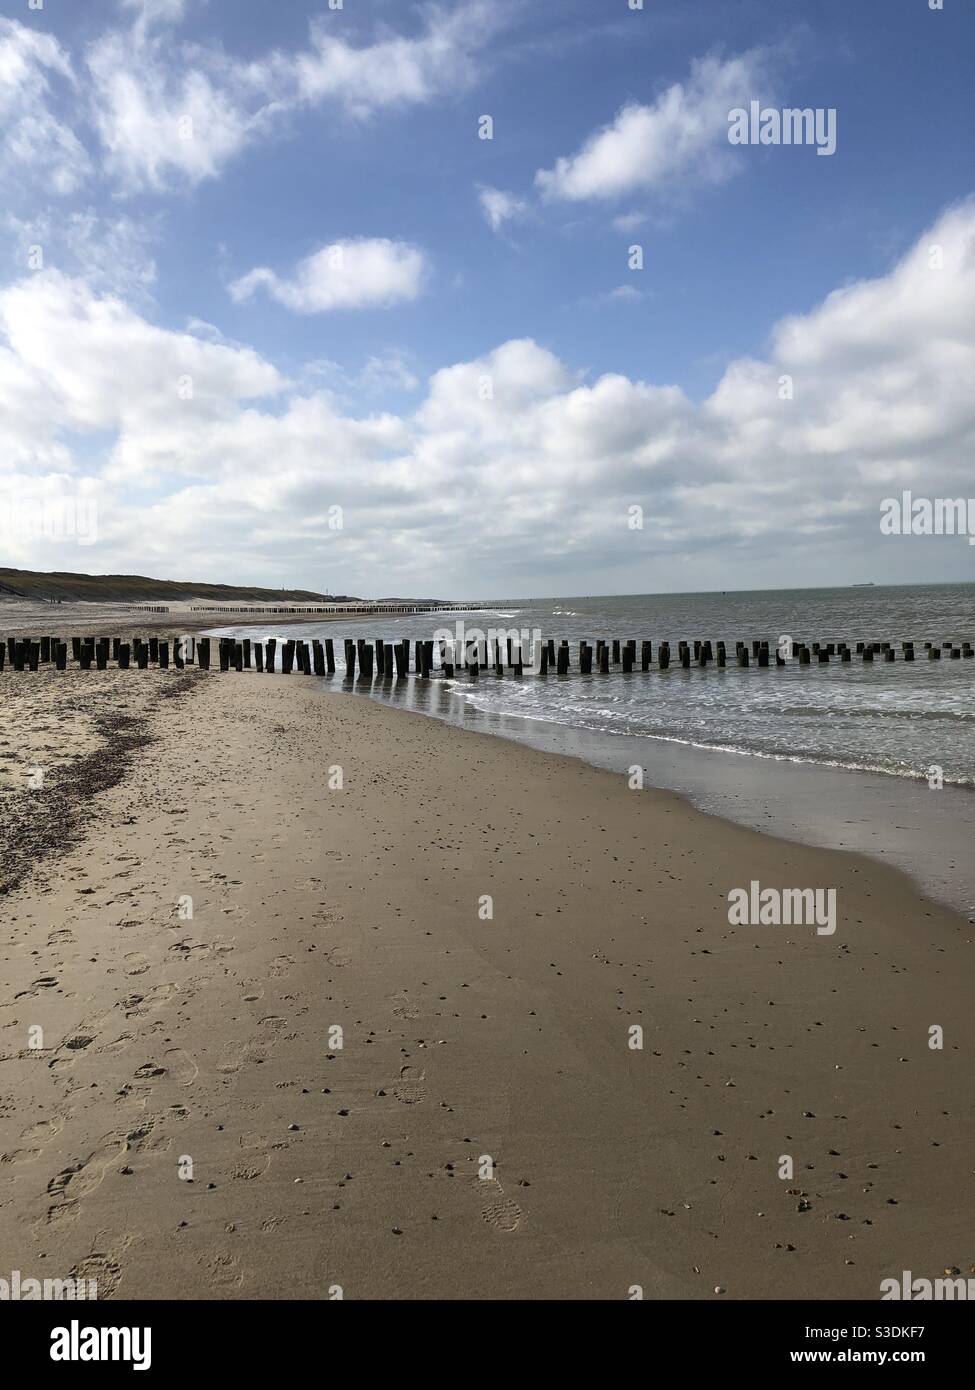 Rompe playas en la arena fotografías e imágenes de alta resolución - Alamy